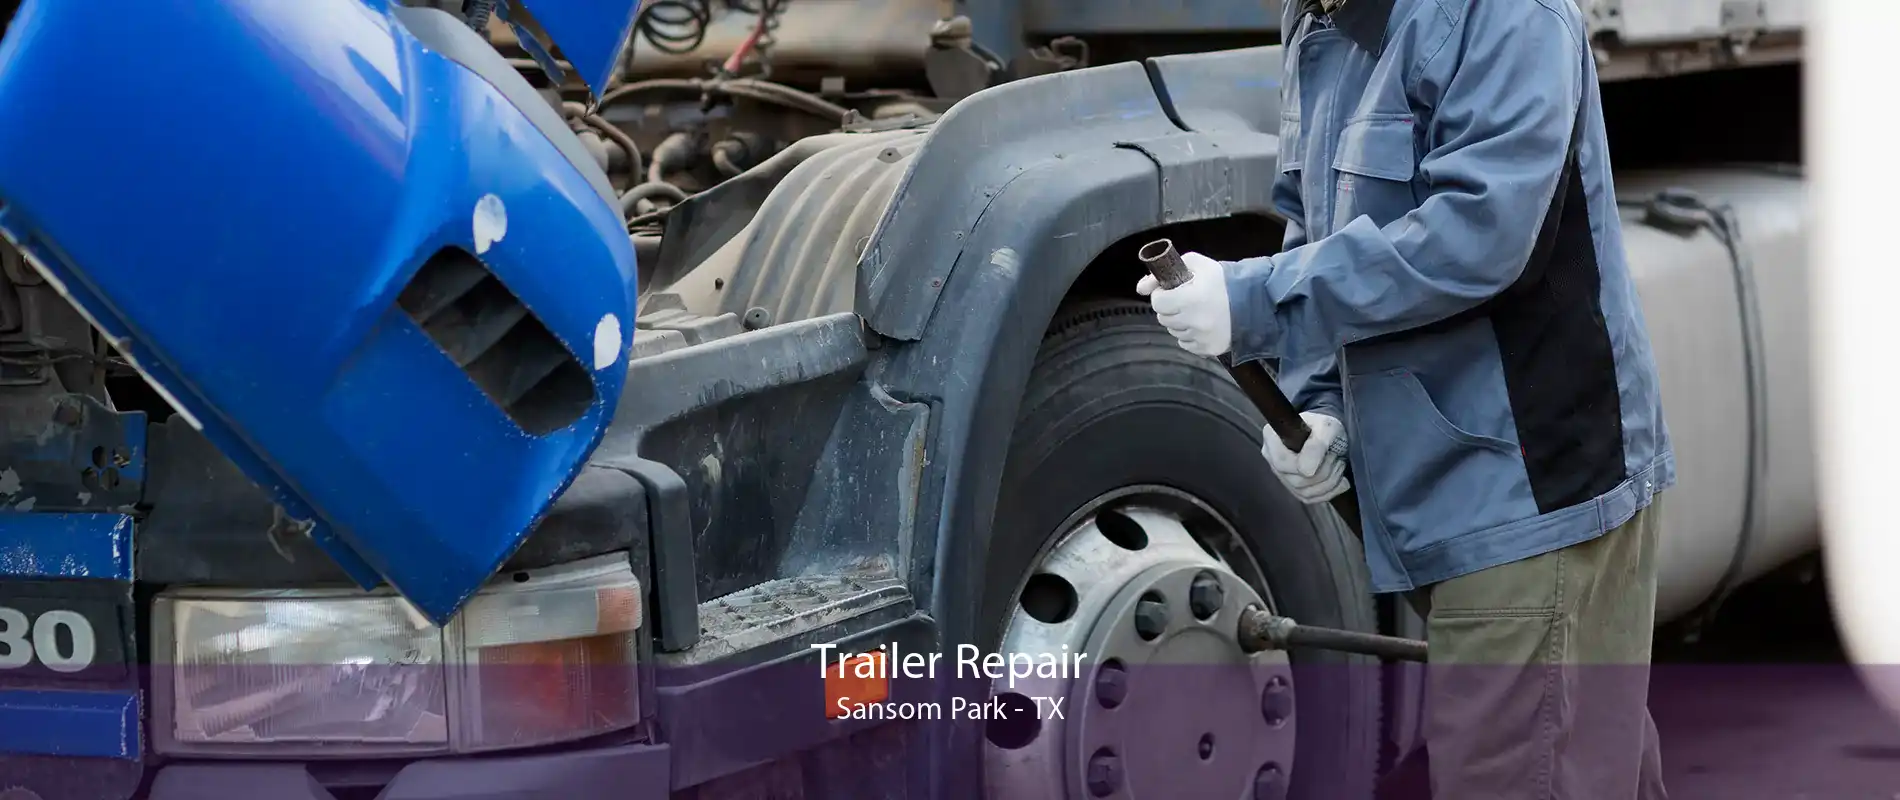 Trailer Repair Sansom Park - TX